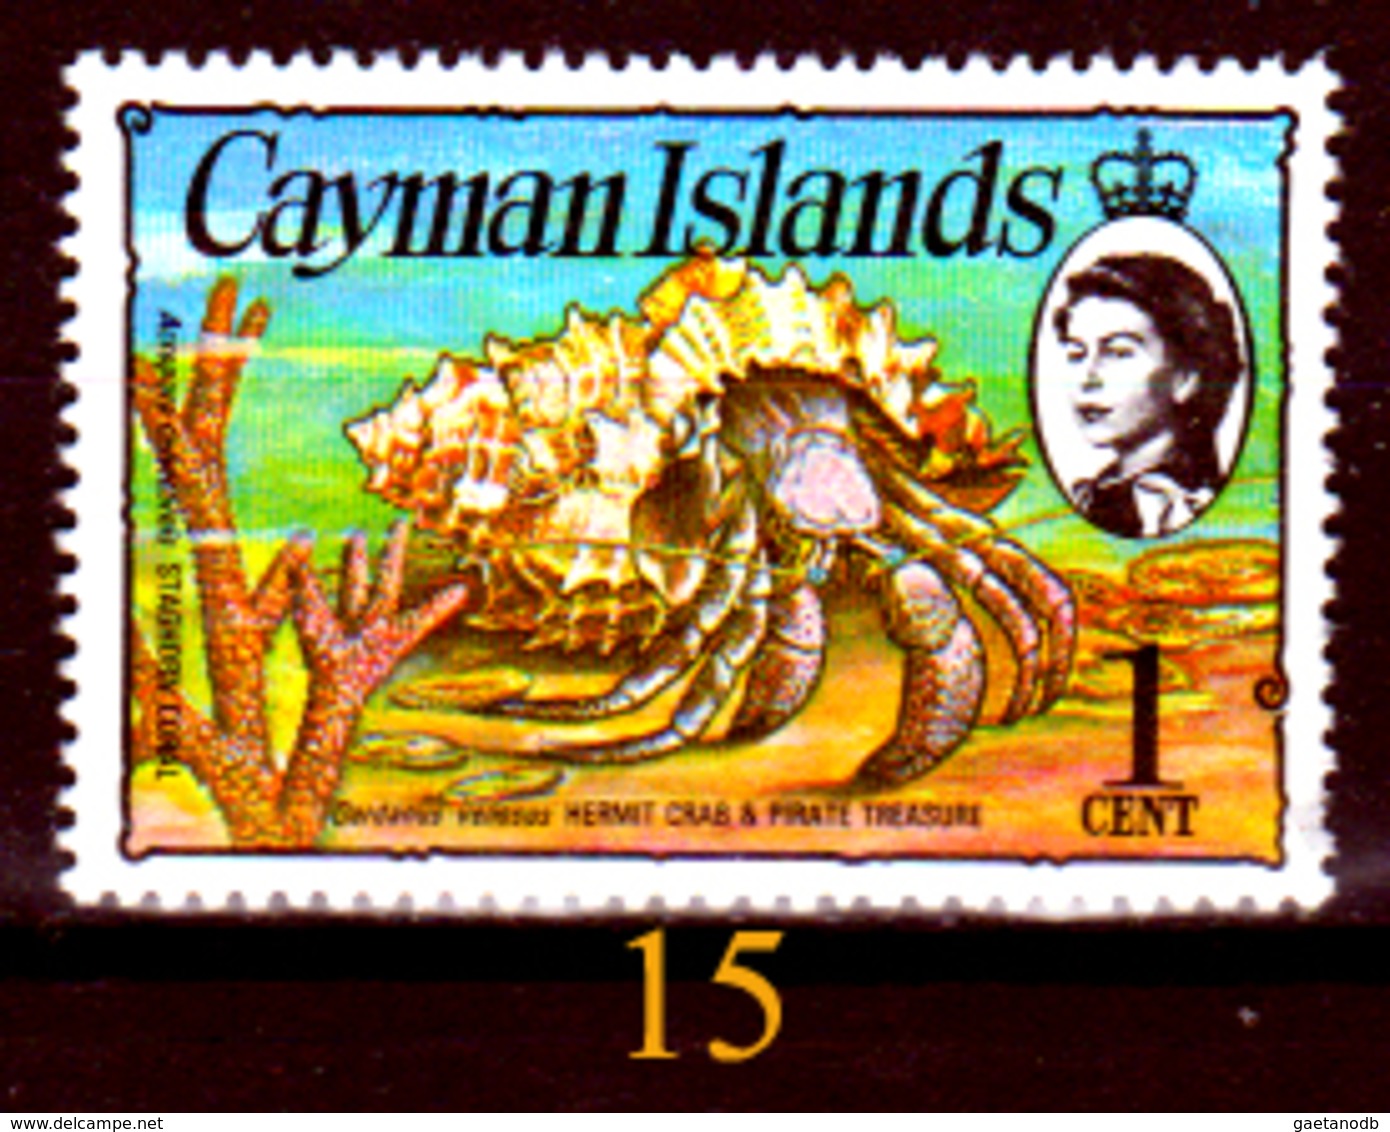 Cayman-057 - Emissione 1965-2001 (++/+/sg/o) MNH/LH/NG - UNO SOLO, a scelta - Senza difetti occulti.